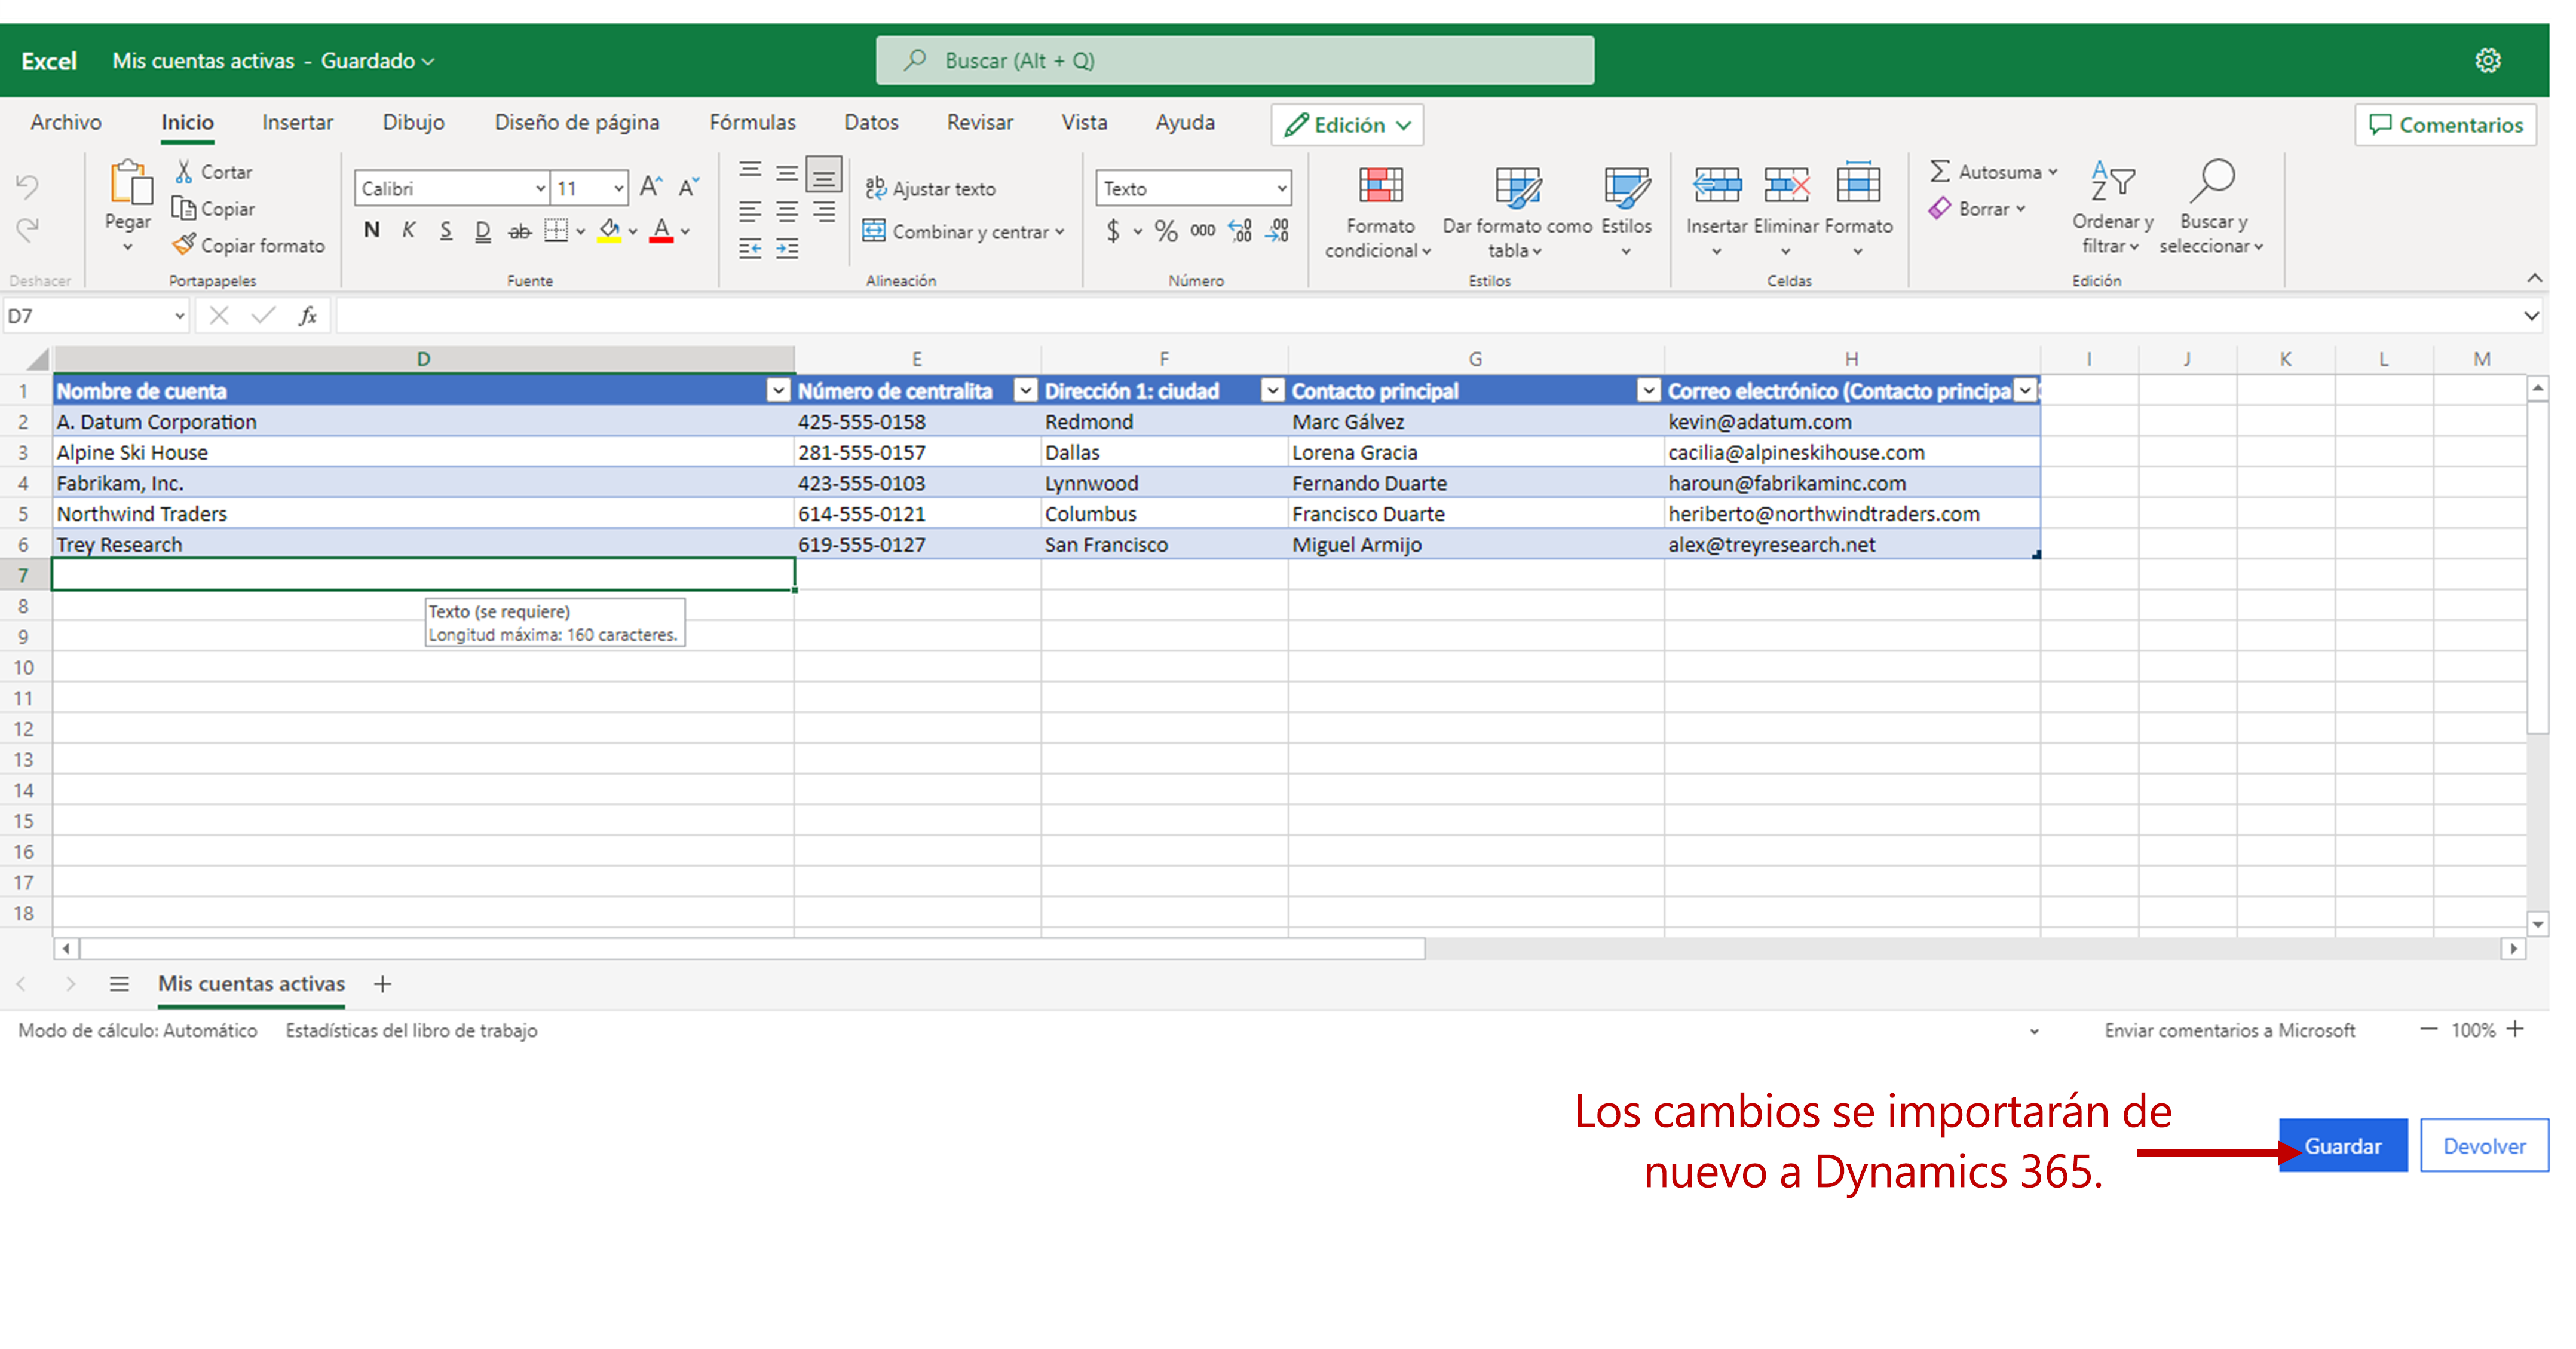 Datos de Dynamics 365 en Excel Online. El botón Guardar está resaltado. Los cambios se vuelven a importar a Dynamics 365 al seleccionar Guardar.